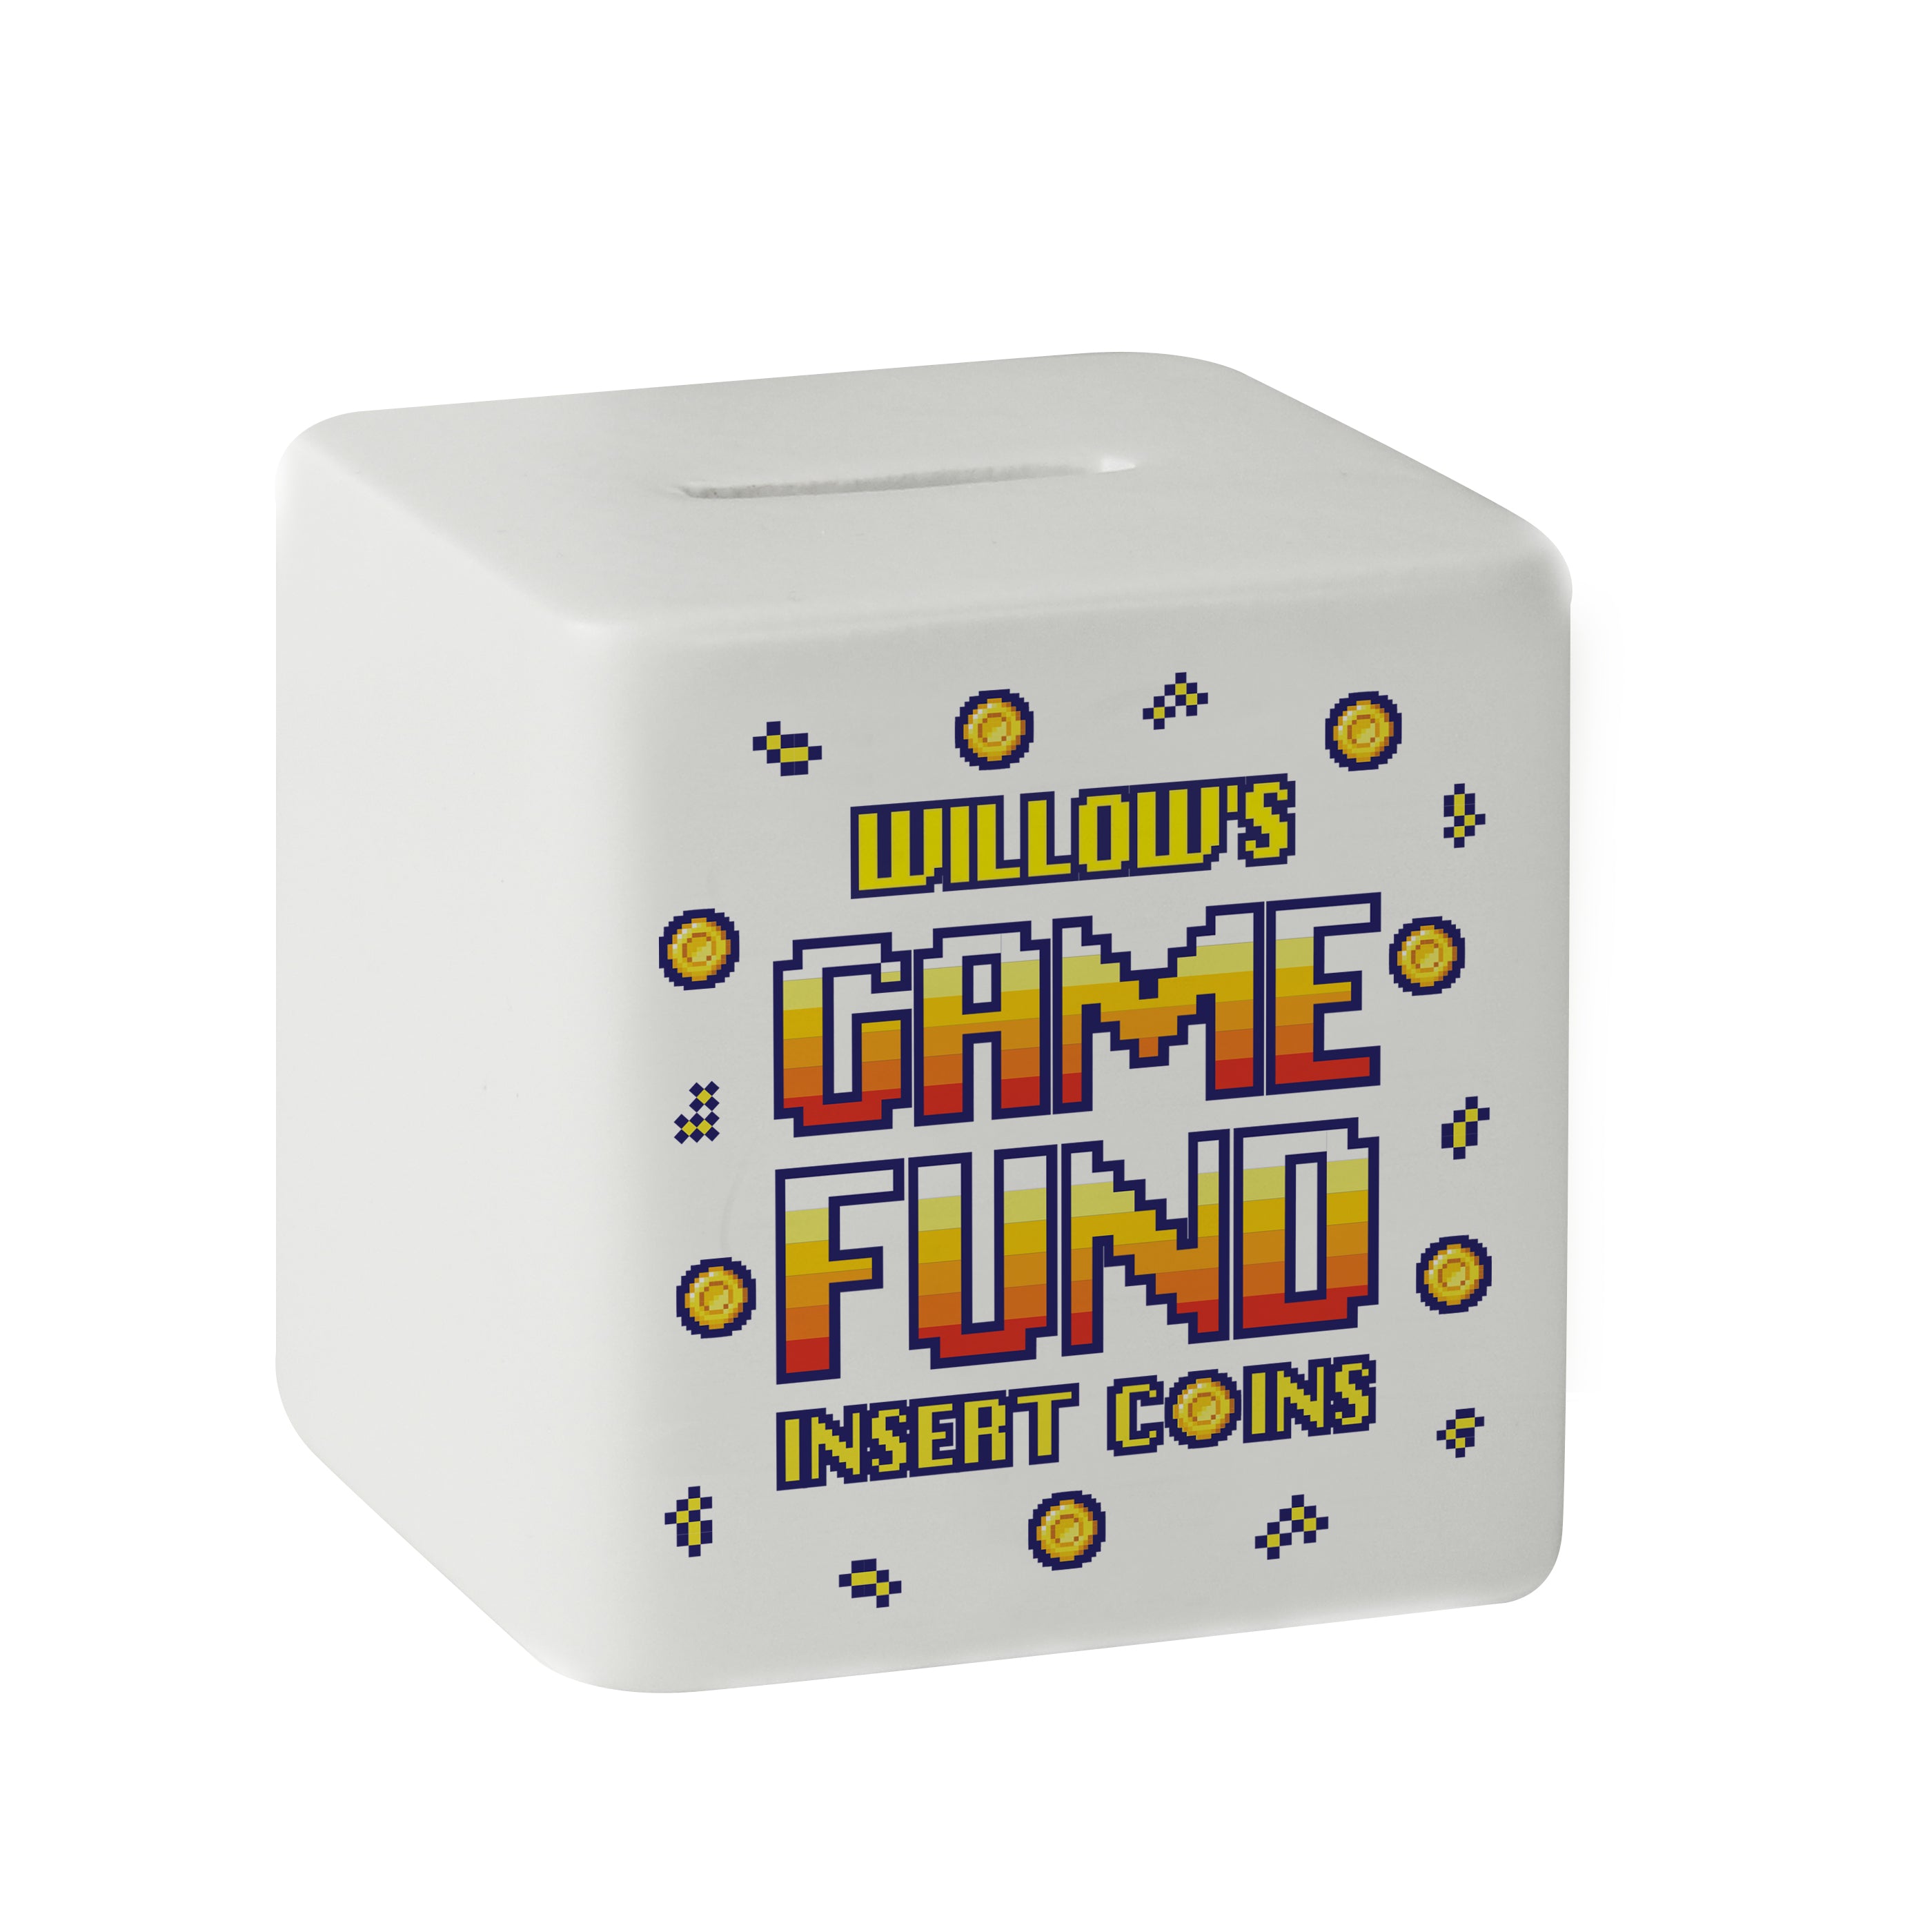 Personalised Gaming Fund Ceramic Square Money Box